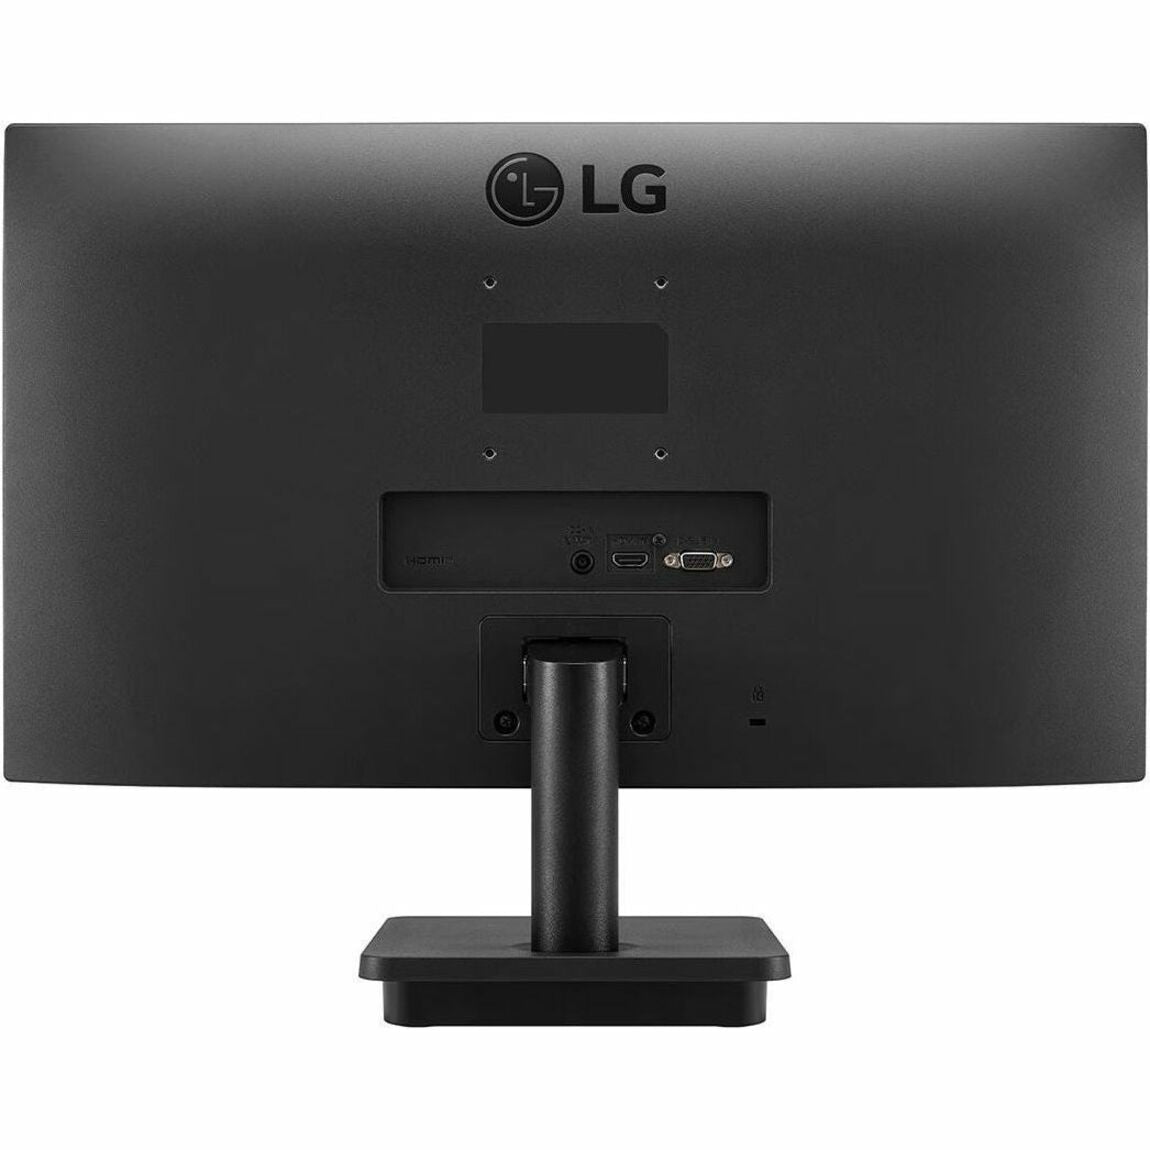 LG 22BR410-B 22" Class Full HD LCD Monitor - 16:9 - Matte Black